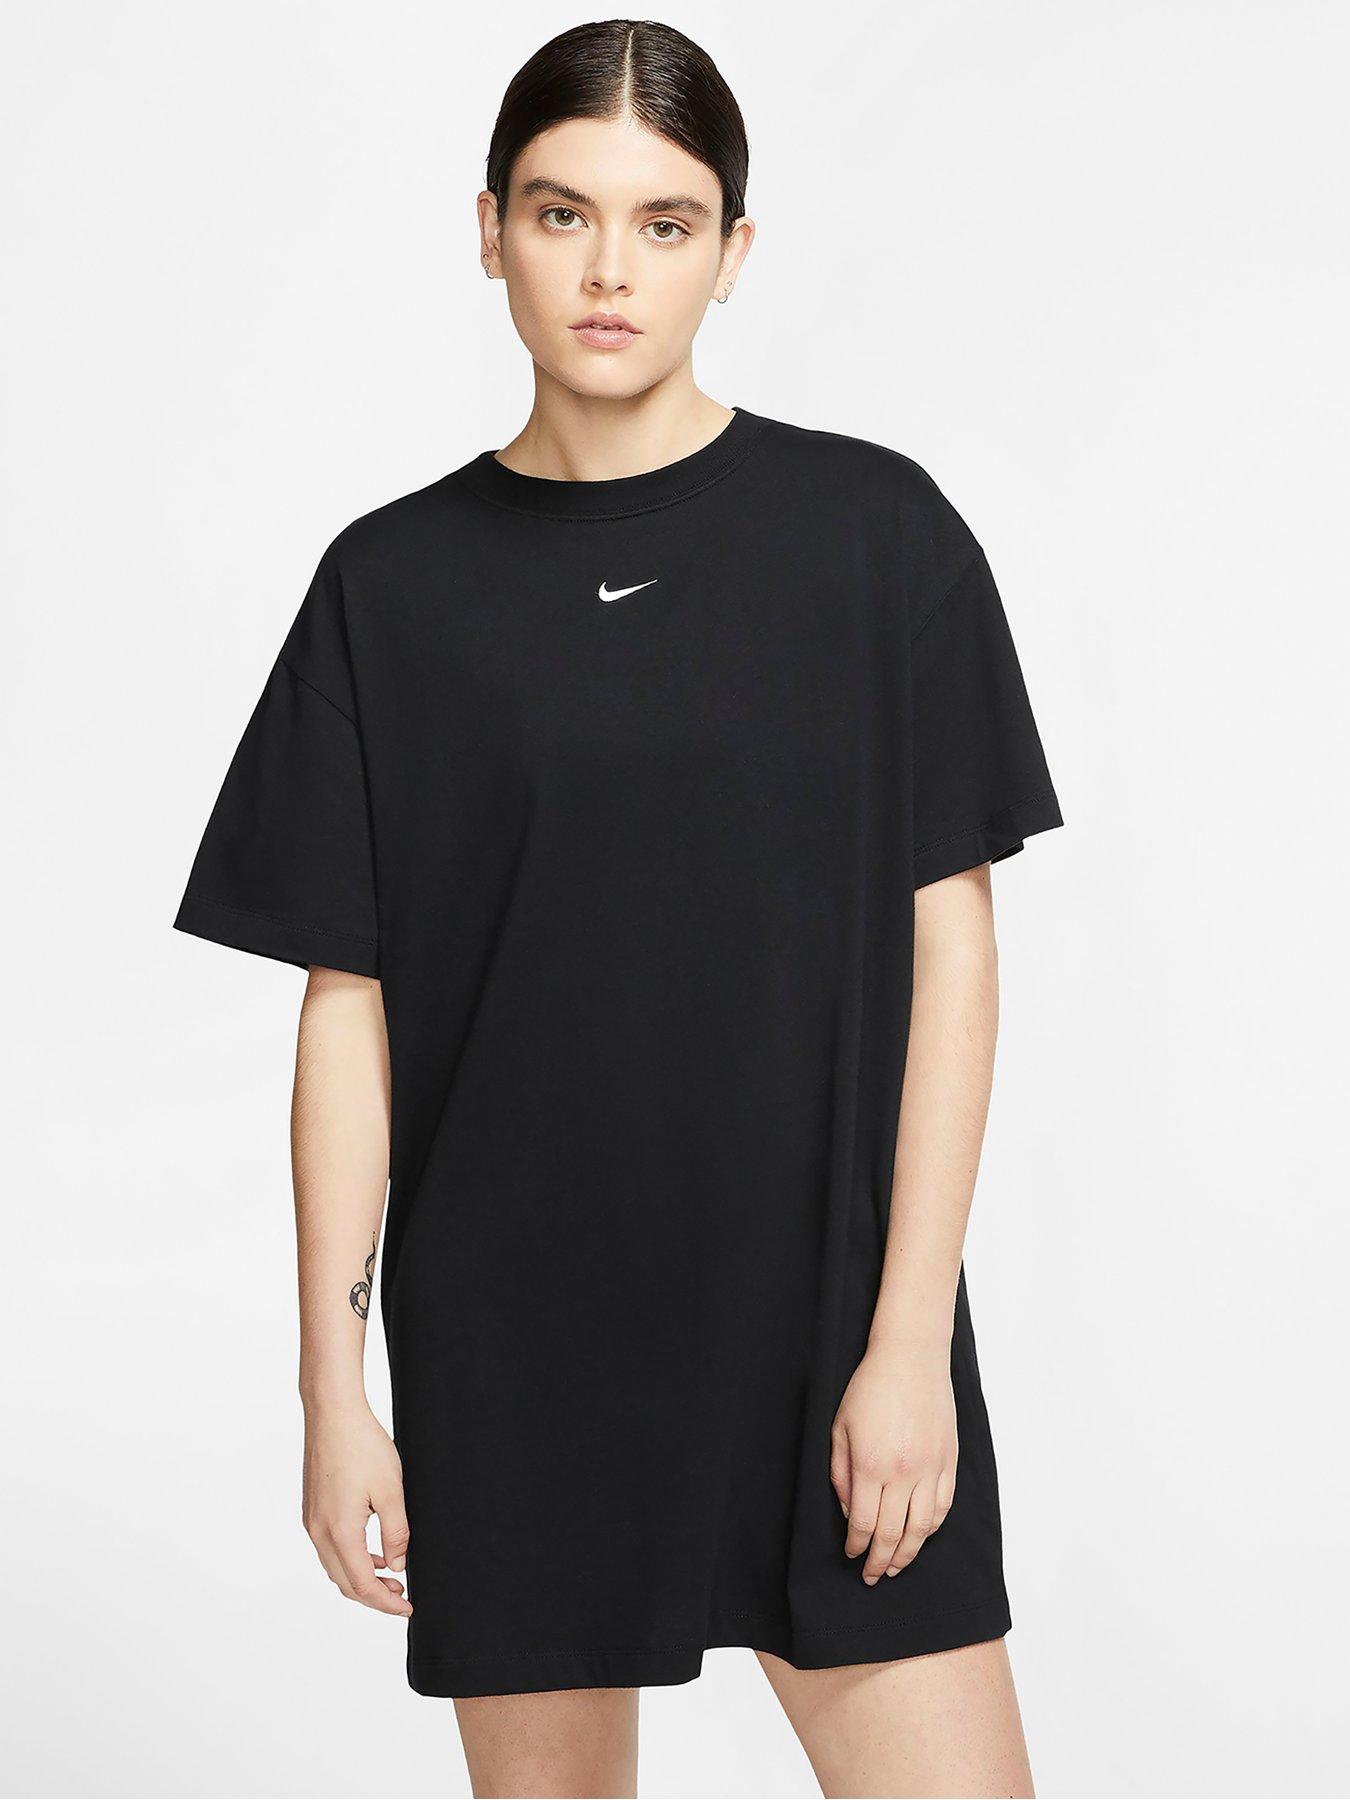 Nike For Women | Nike Womens Clothing 